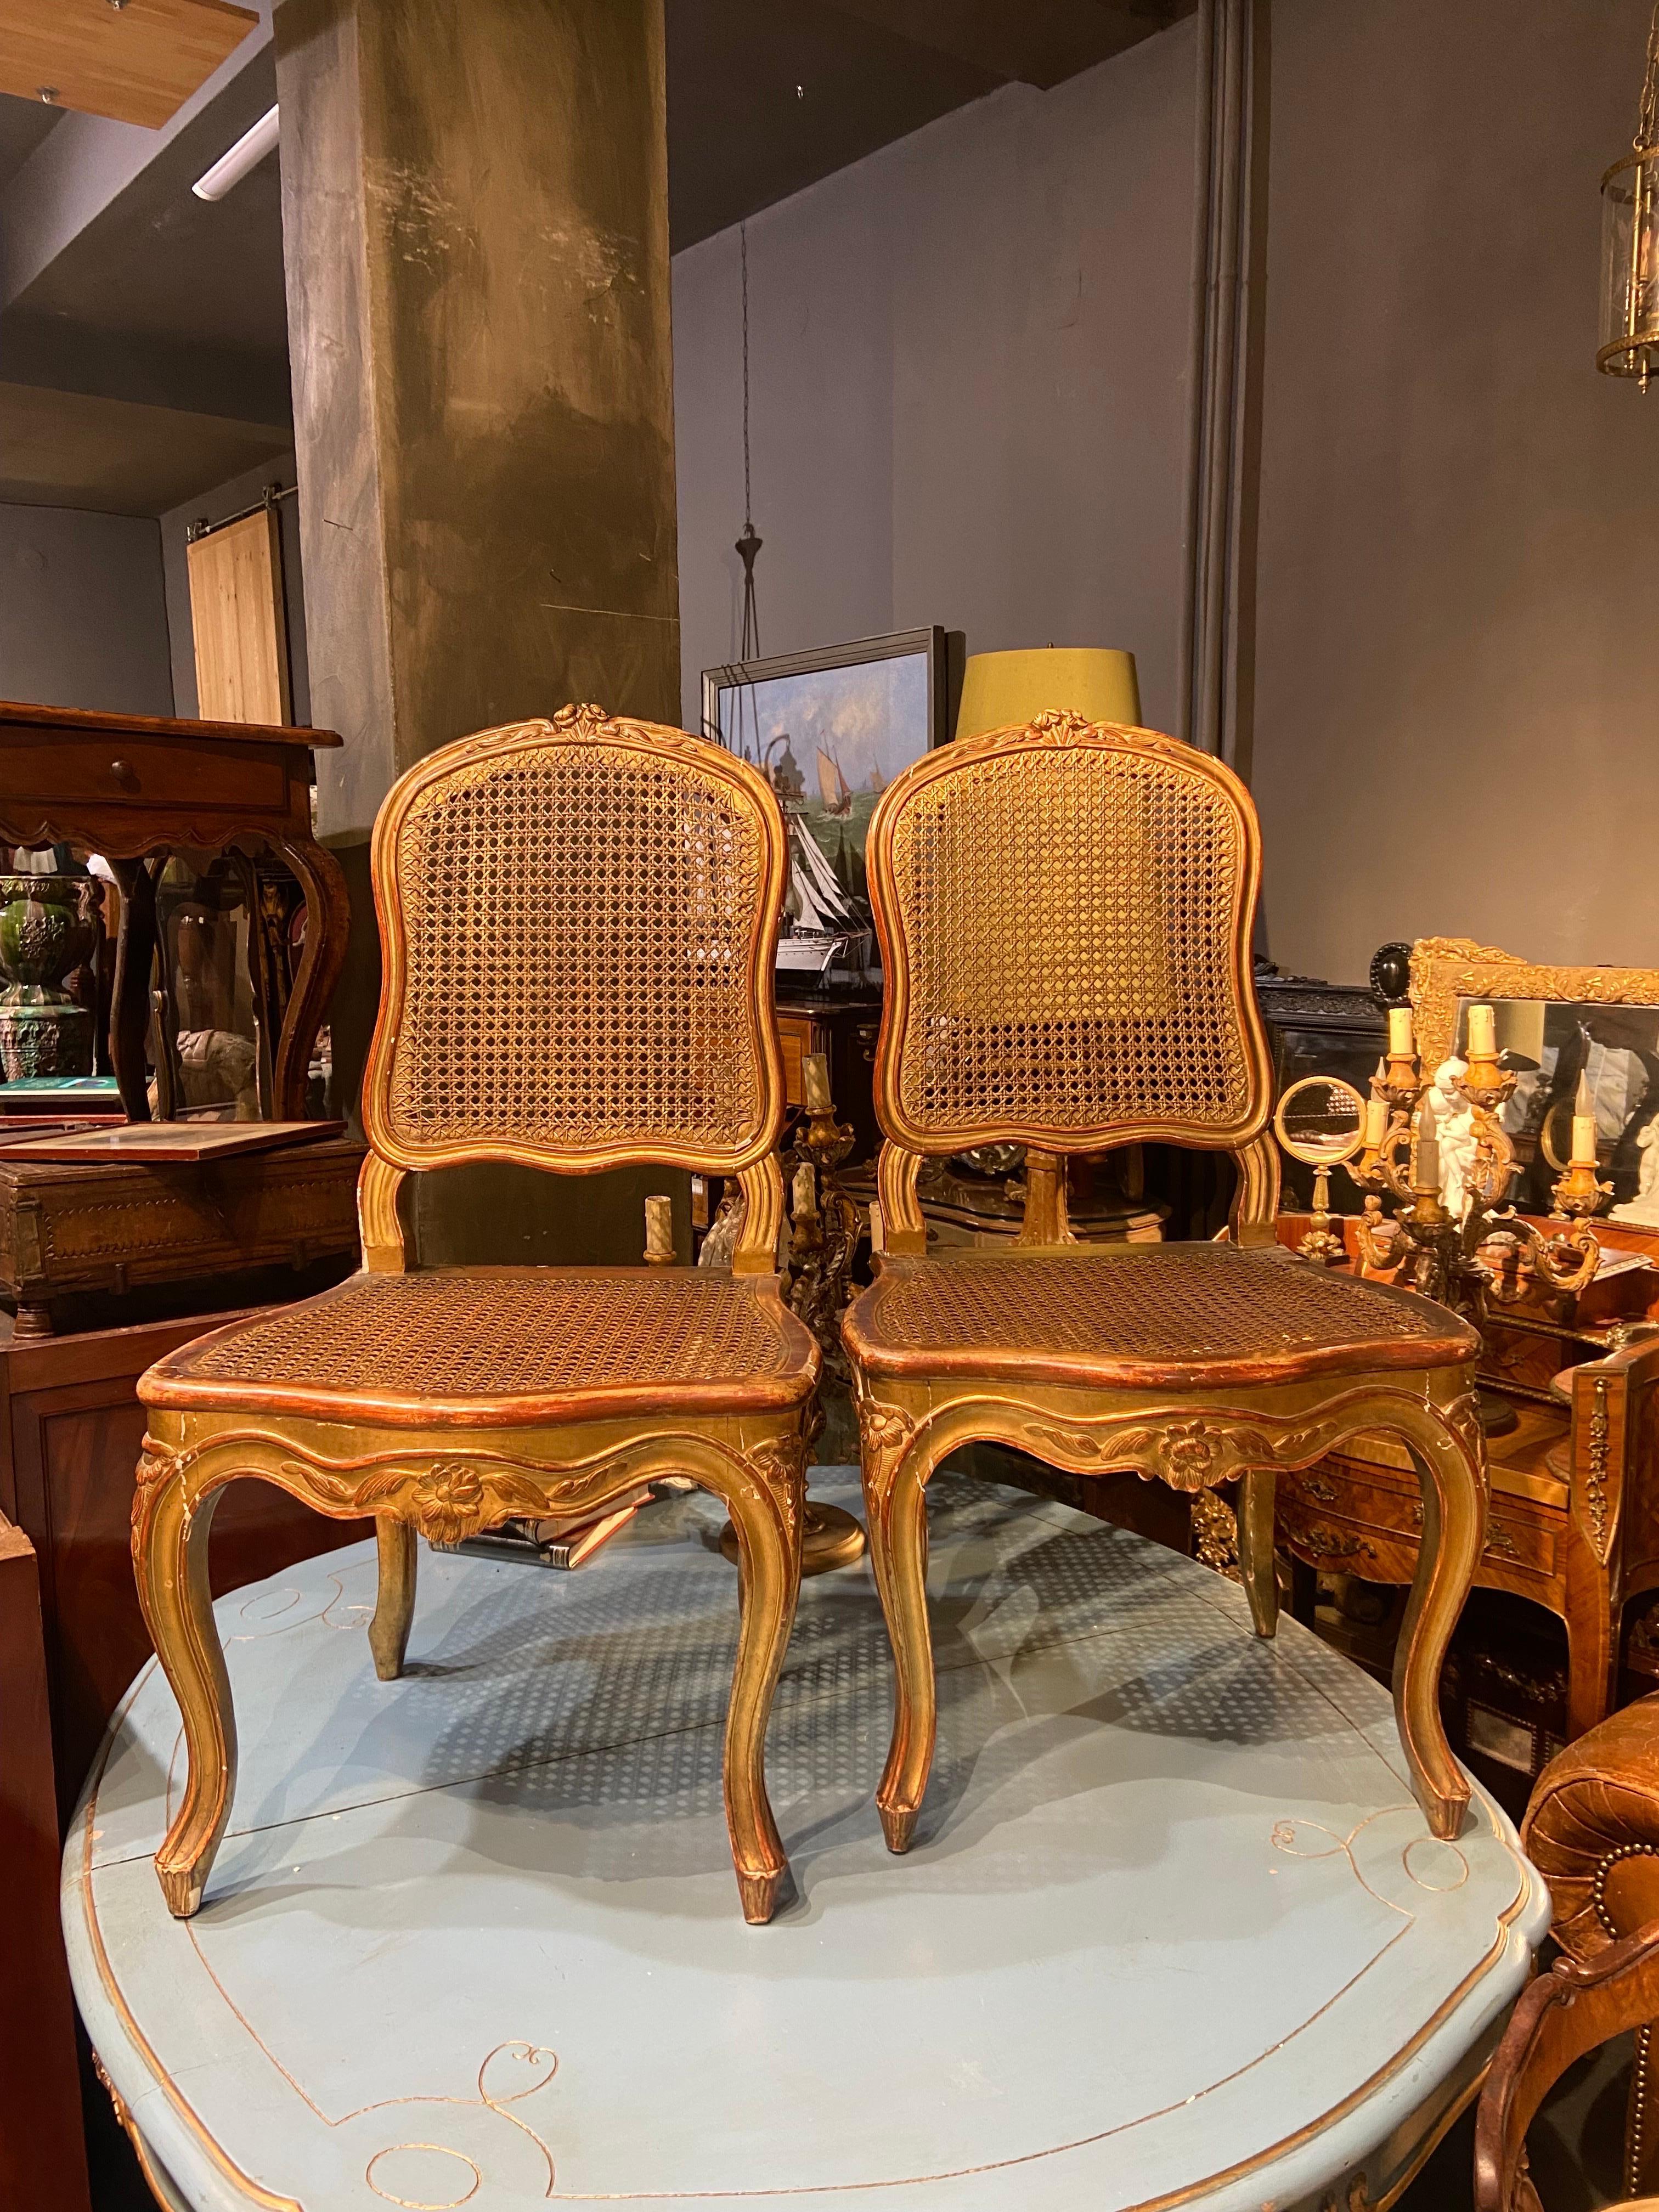 Französische handgeschnitzte Nussbaumstühle aus vergoldetem Holz des 19. Jahrhunderts mit Sitz und Rückenlehne aus Schilfrohr. Sehr guter Originalzustand, keine Restaurierungen vorgenommen.
Frankreich, um 1870.